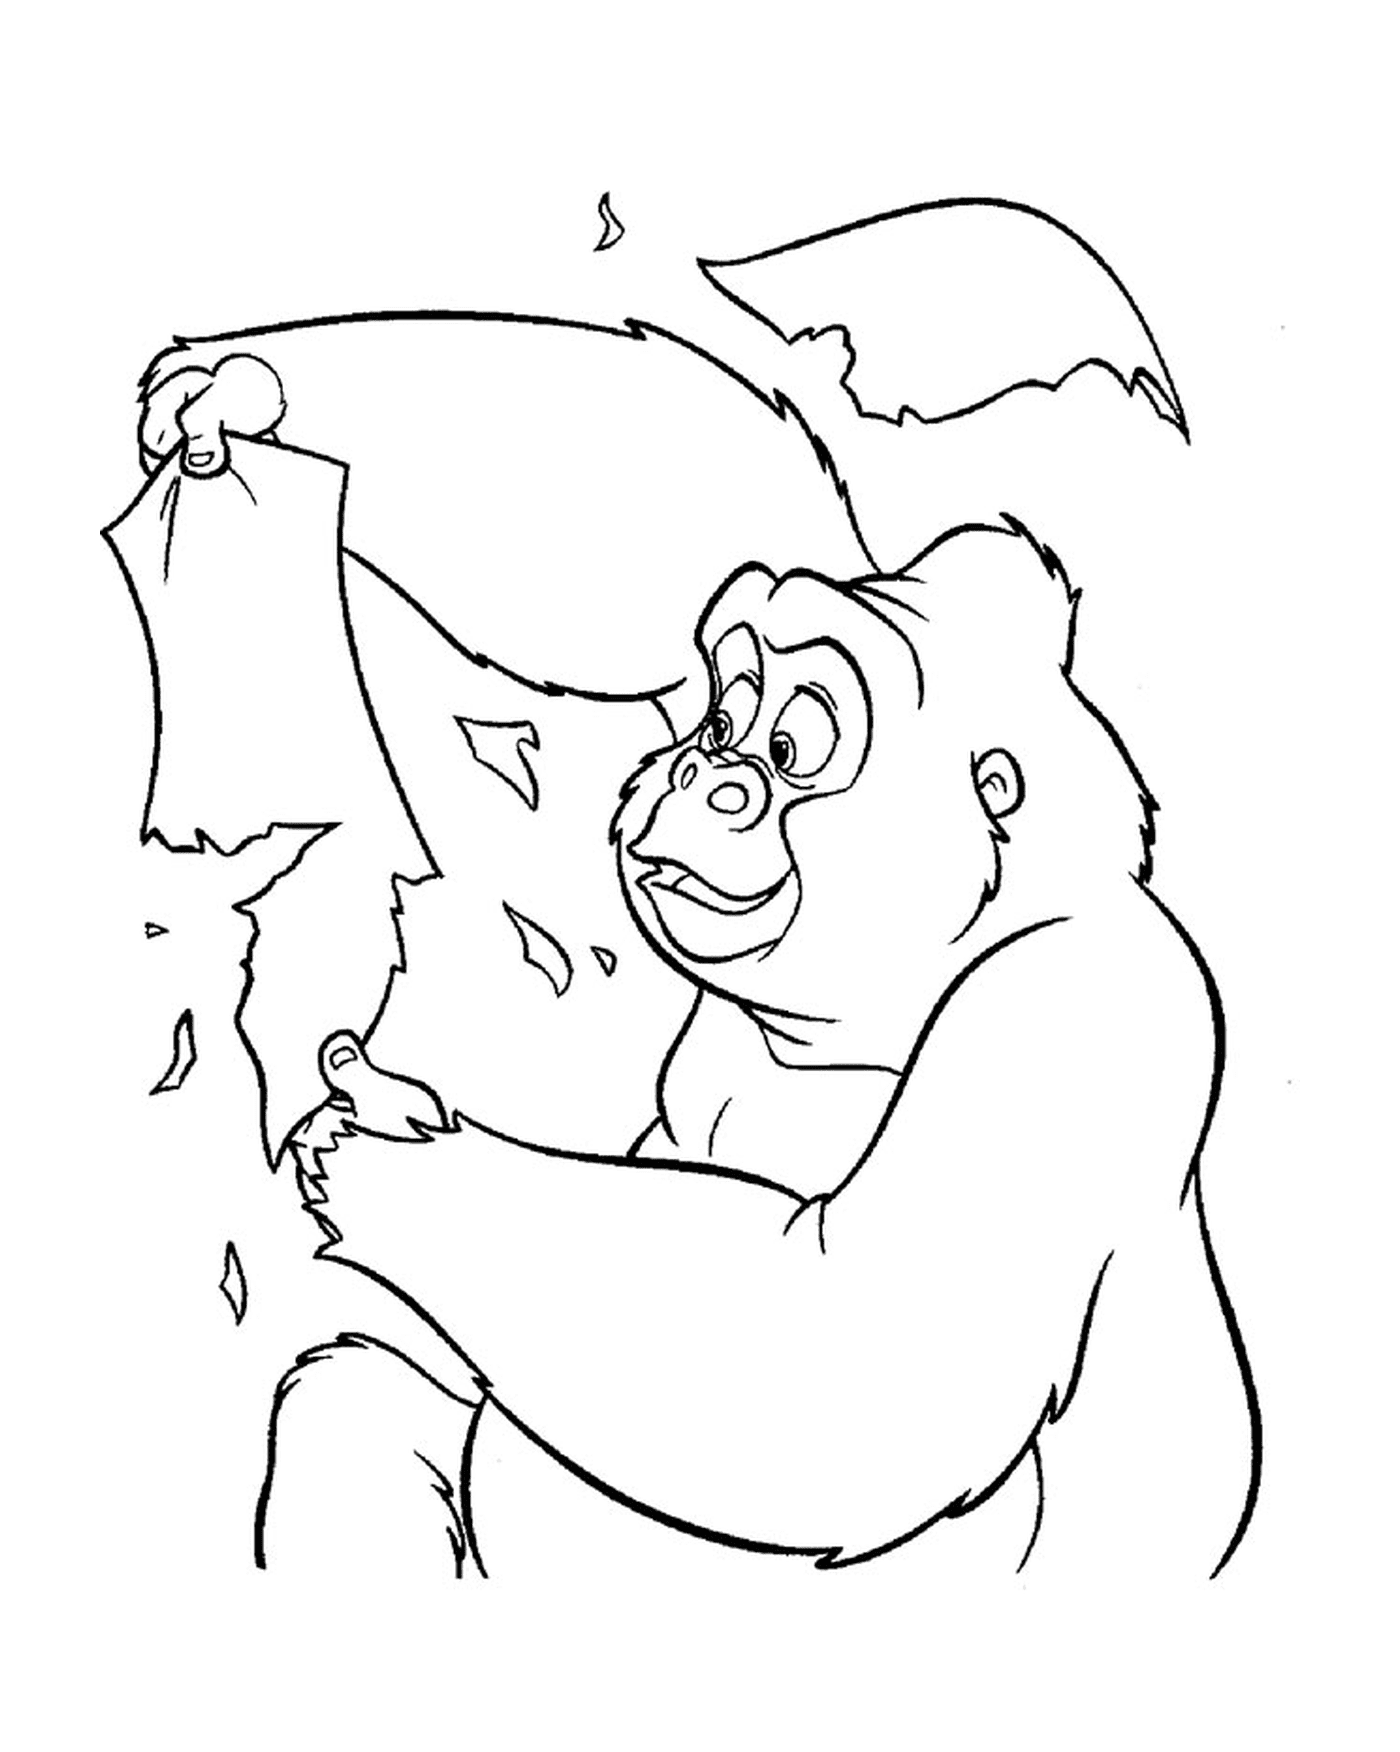  Gorila segurando uma folha de papel 